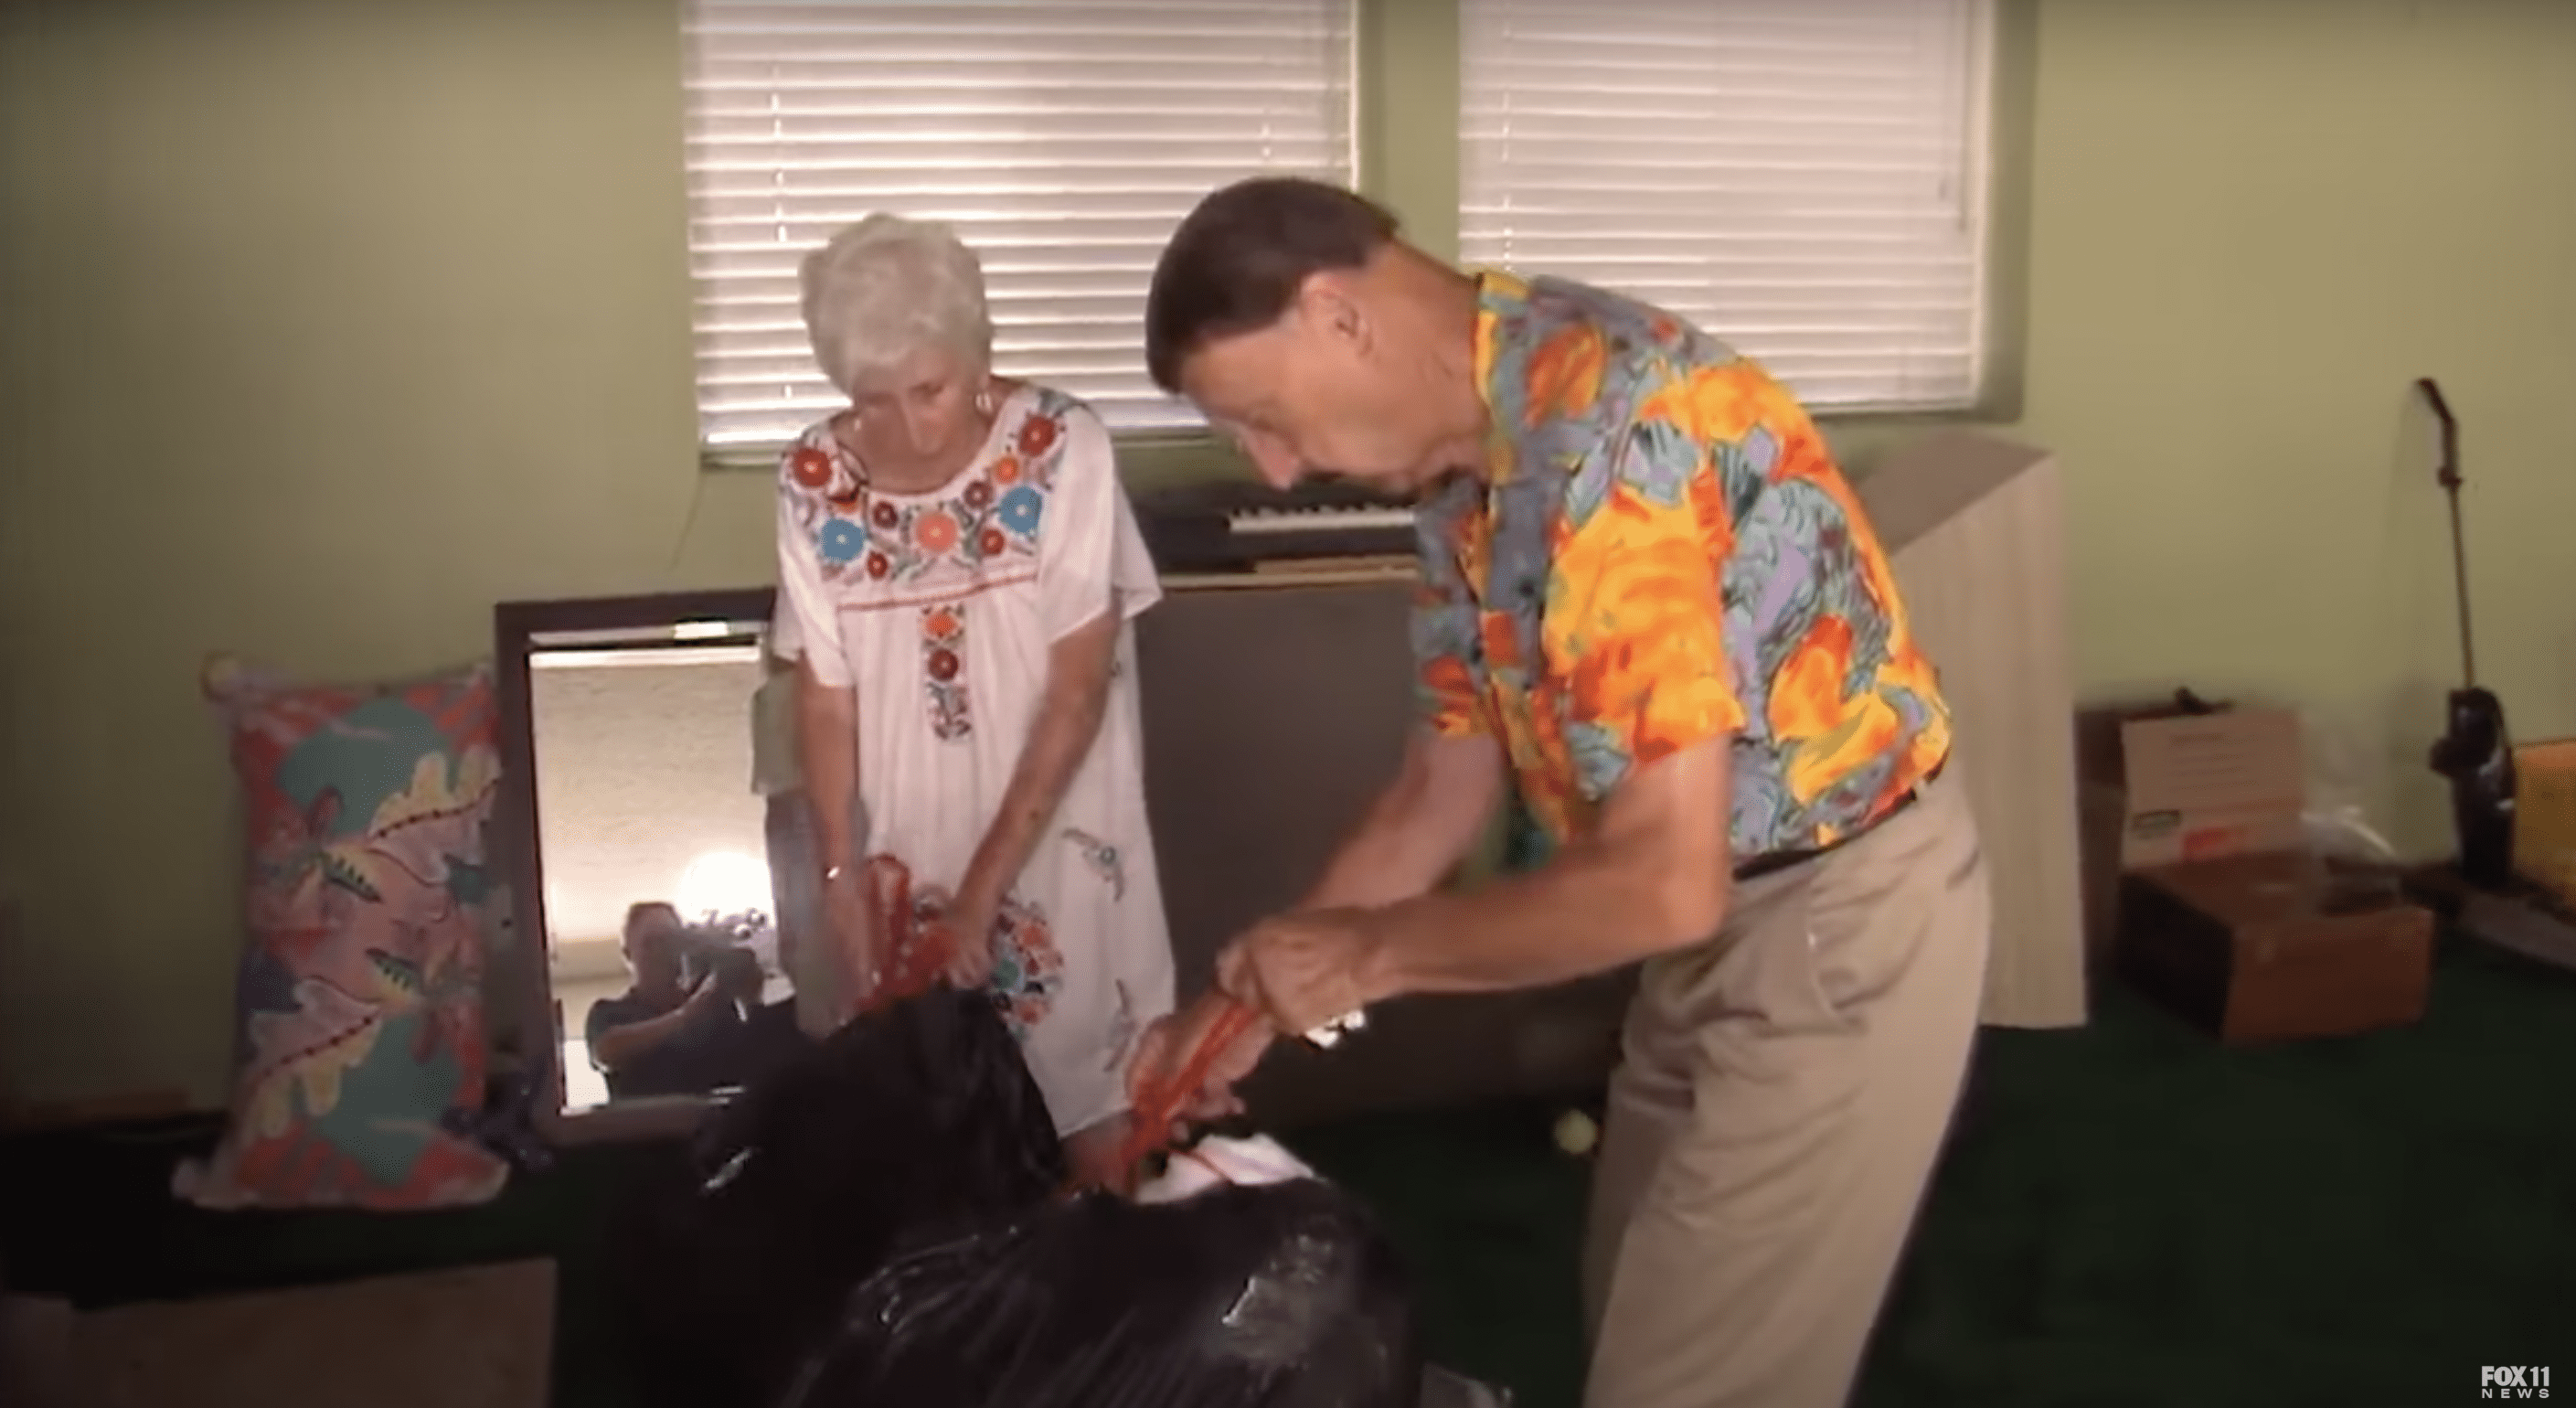 Helen und Hank packen ihre Sachen. | Quelle: Youtube.com/FOX 11 Los Angeles